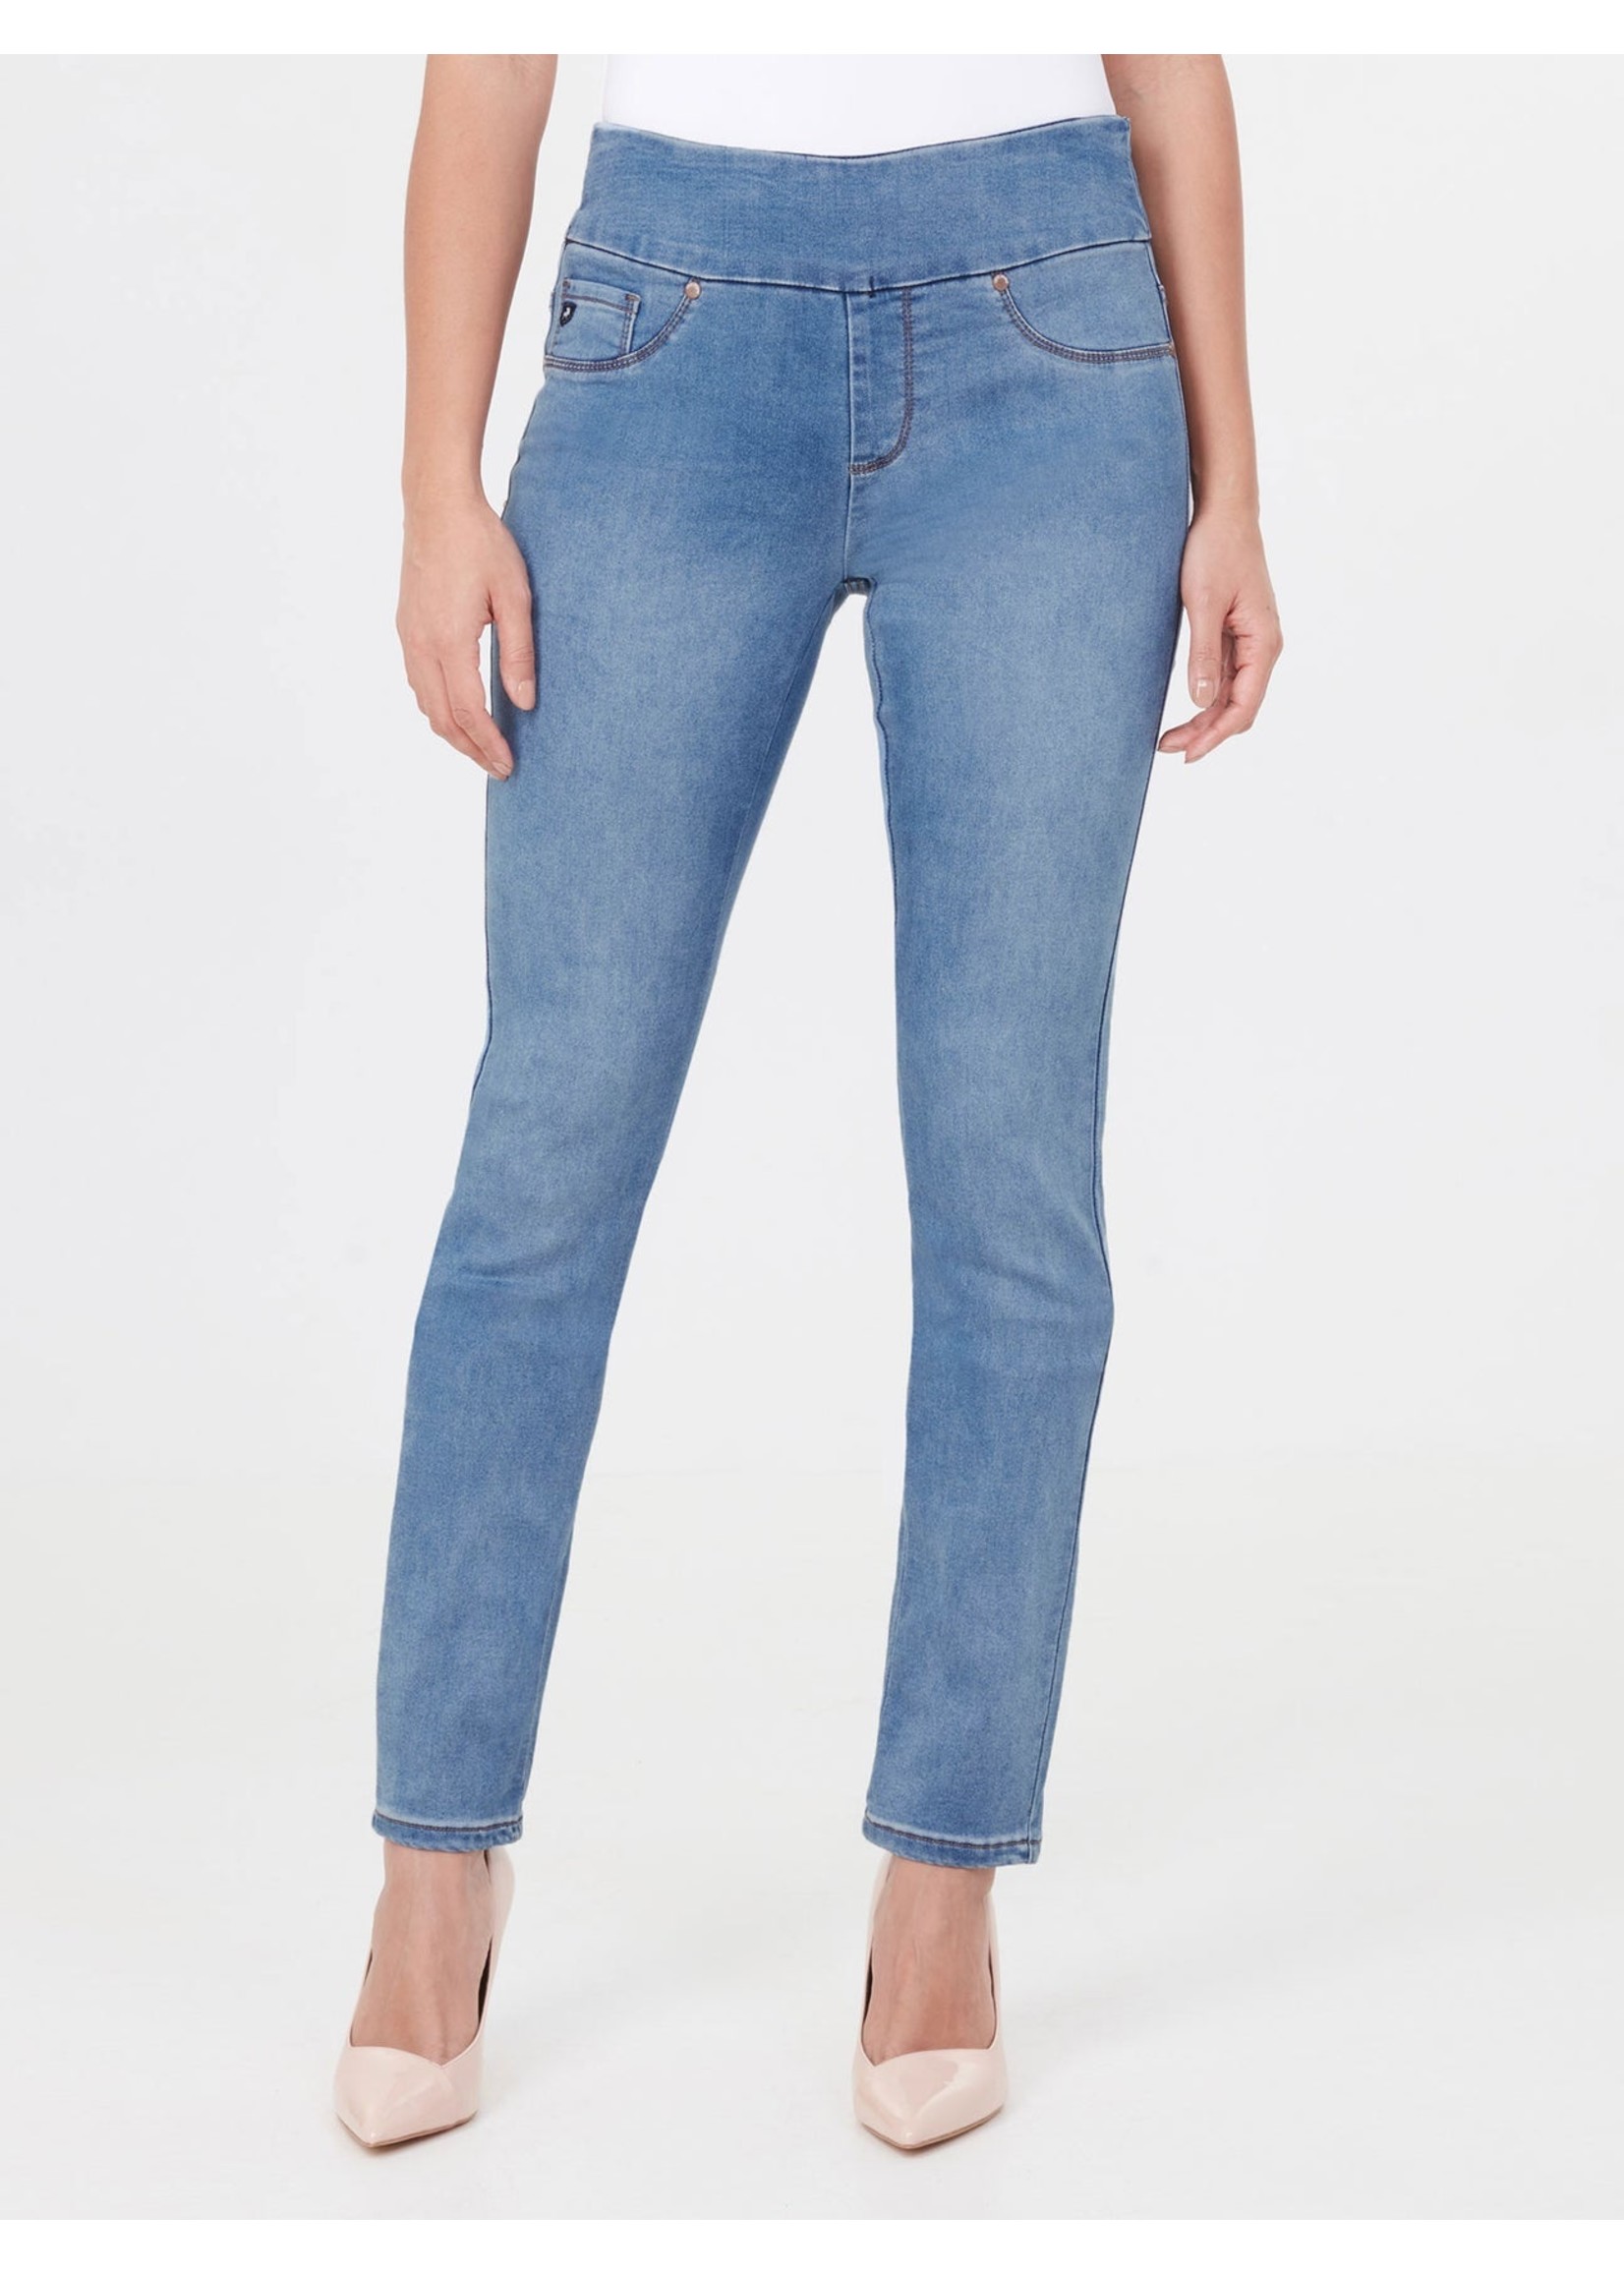 LOIS JEANS & JACKETS Jeans taille régulière facile à enfiler LIETTE SKINNY par Lois-Femme